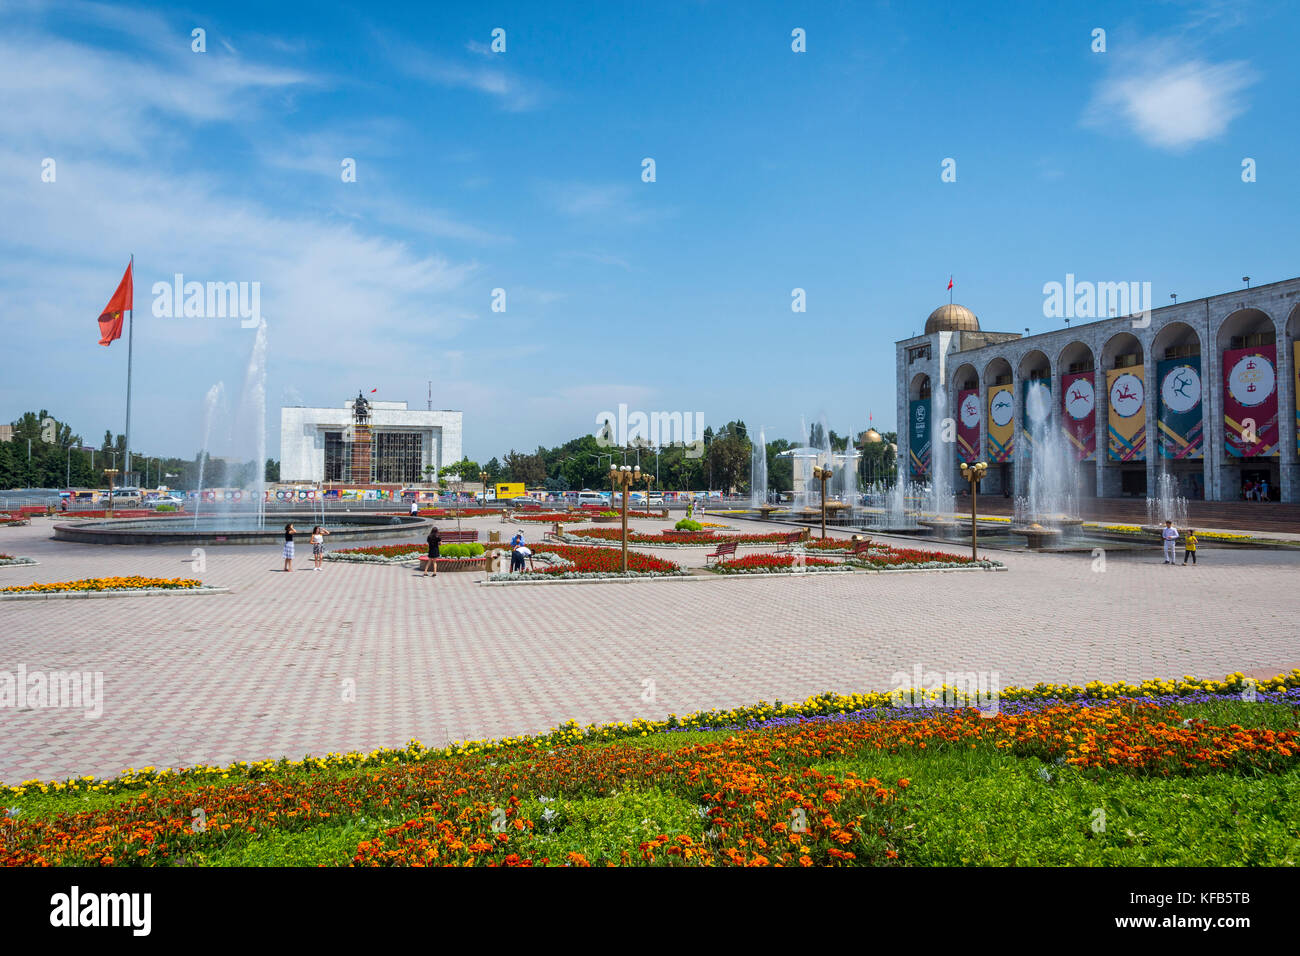 Bichkek, Kirghizistan - 25 juillet : trop d'ala (place principale) décorées avec les panneaux de l'événement sportif mondial jeux nomades. juillet 2016 Banque D'Images